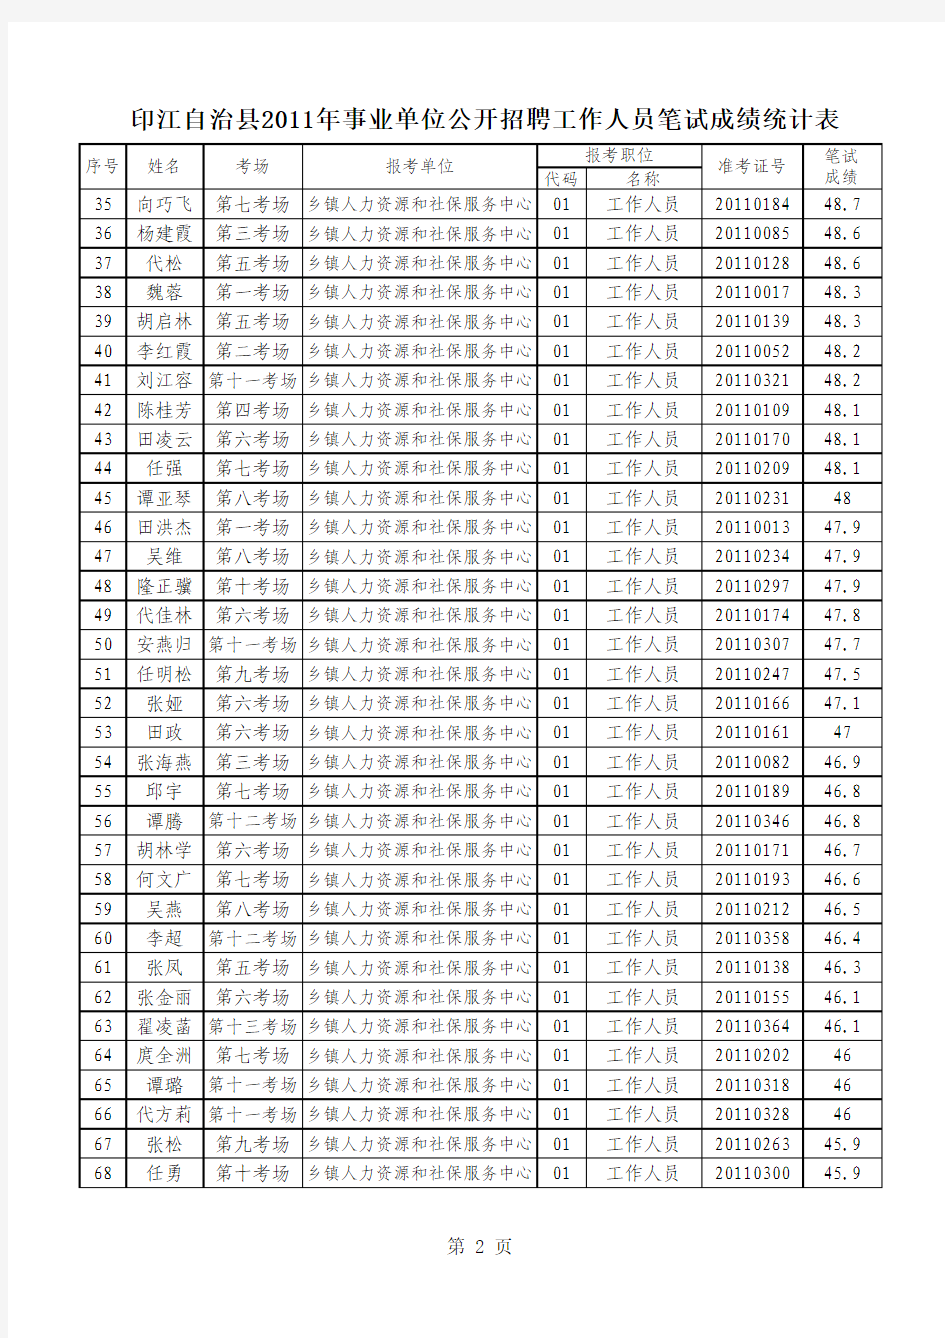 印江自治县2011年事业单位公开招聘工作人员笔试成绩统计表